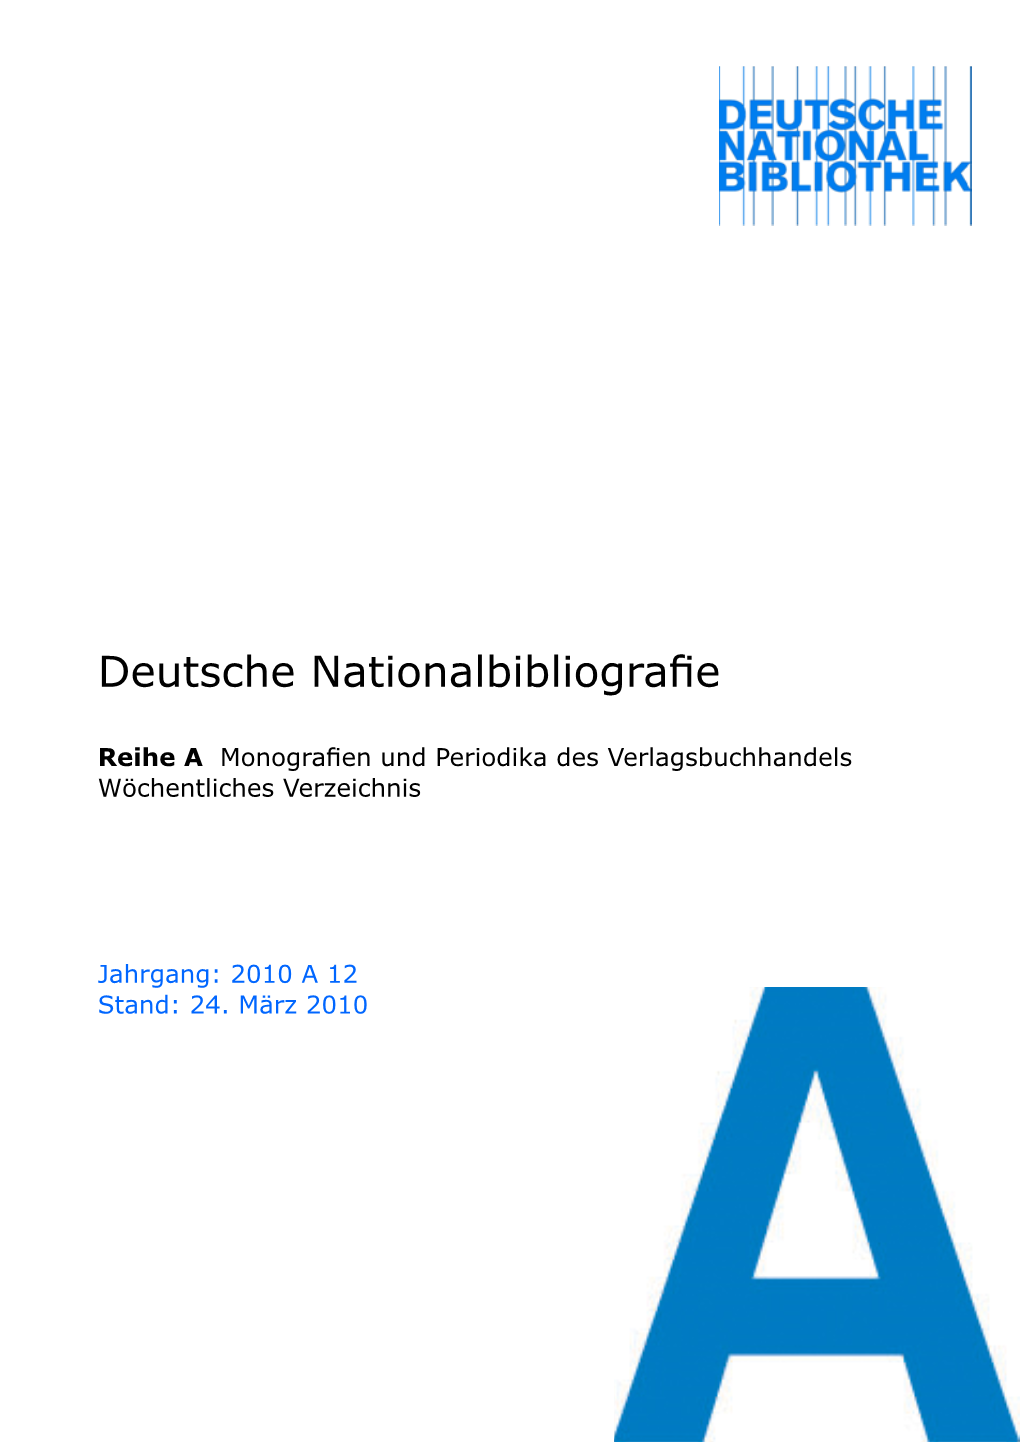 Deutsche Nationalbibliografie 2010 a 12